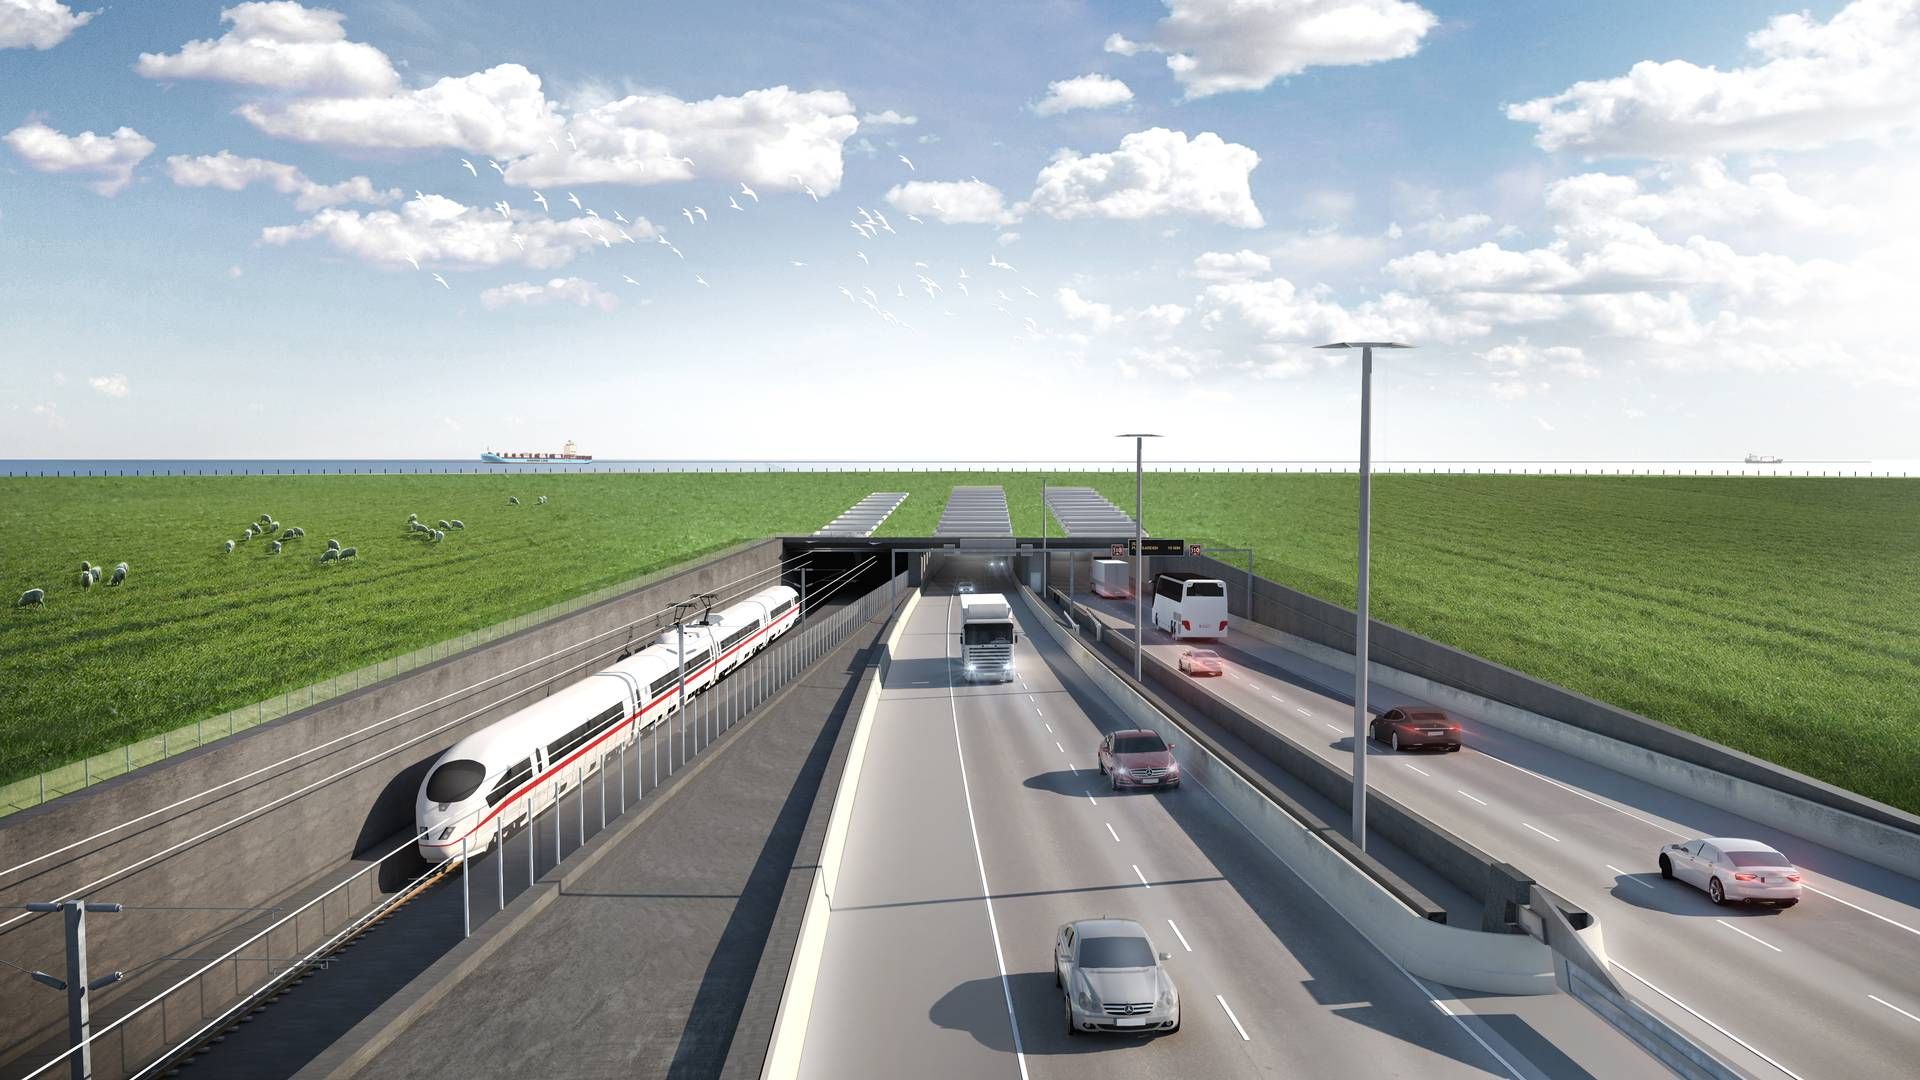 Arbejdet med Femern Bælt-forbindelsen blev igangsat i 2020, og den 18 km lange tunnel forventes med de nuværende planer at stå færdig i 2029. Til den tid vil det tage ti minutter at køre igennem i bil og syv minutter i tog. | Foto: Femern A/S / PR